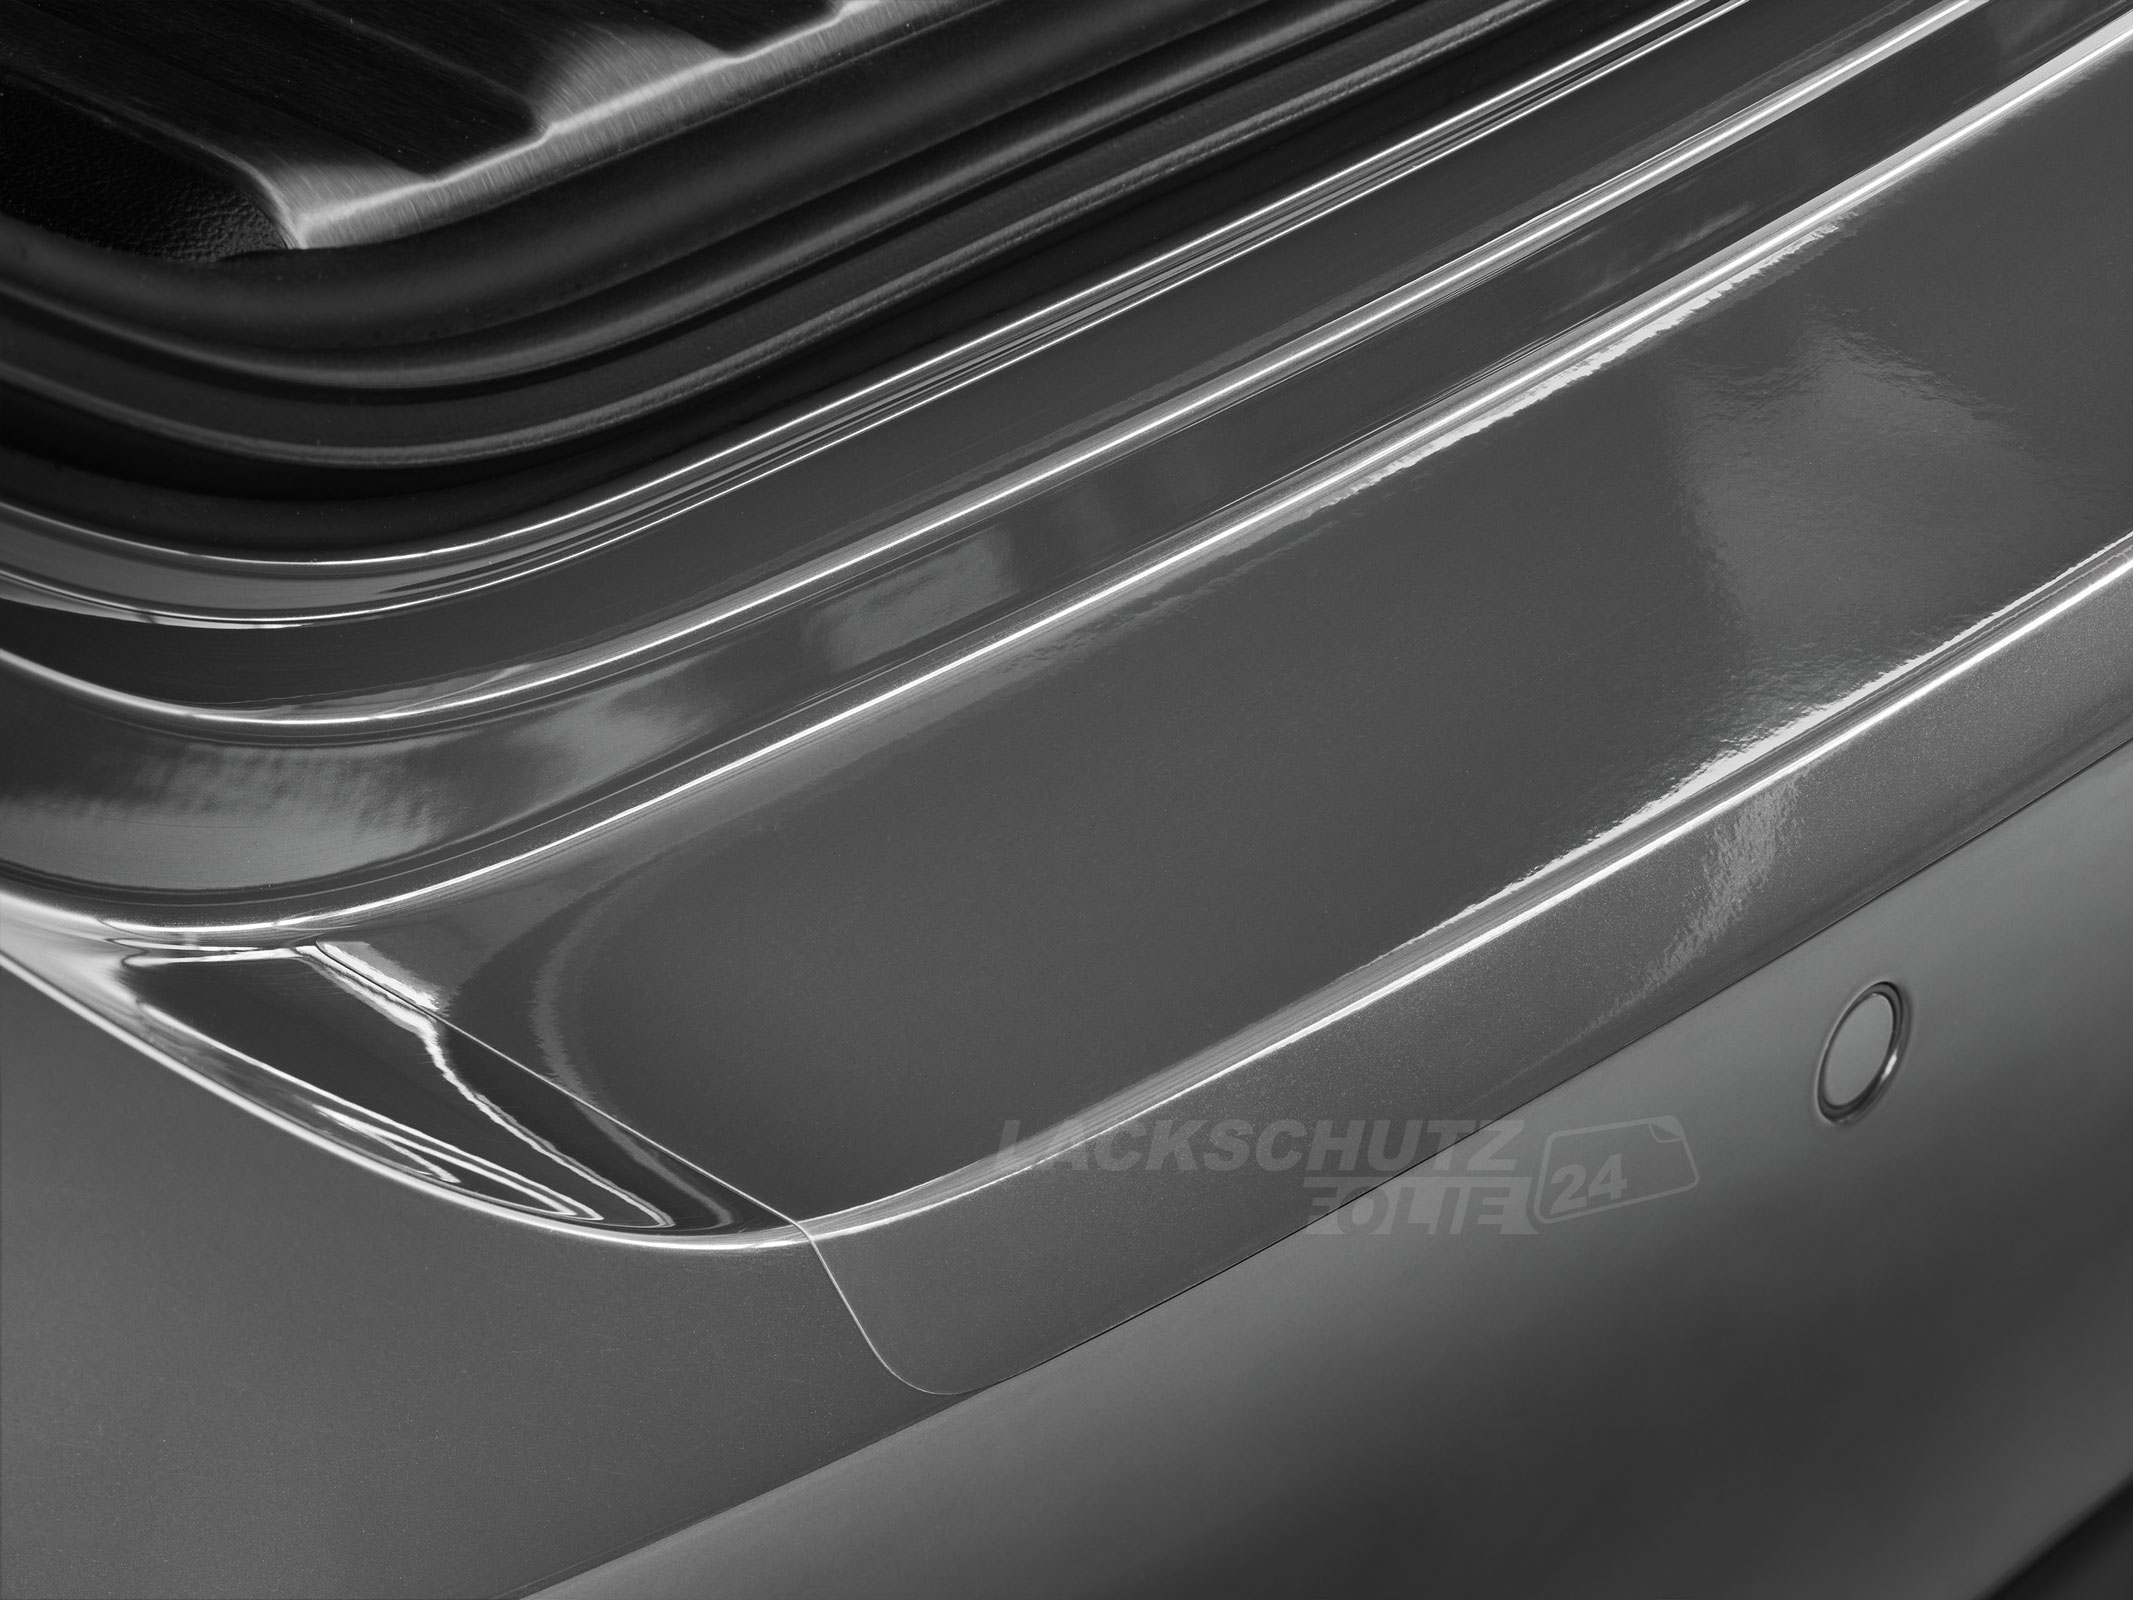 Ladekantenschutzfolie - Transparent Glatt Hochglänzend 240 µm stark für Seat Leon Typ 1M, bis BJ 2005